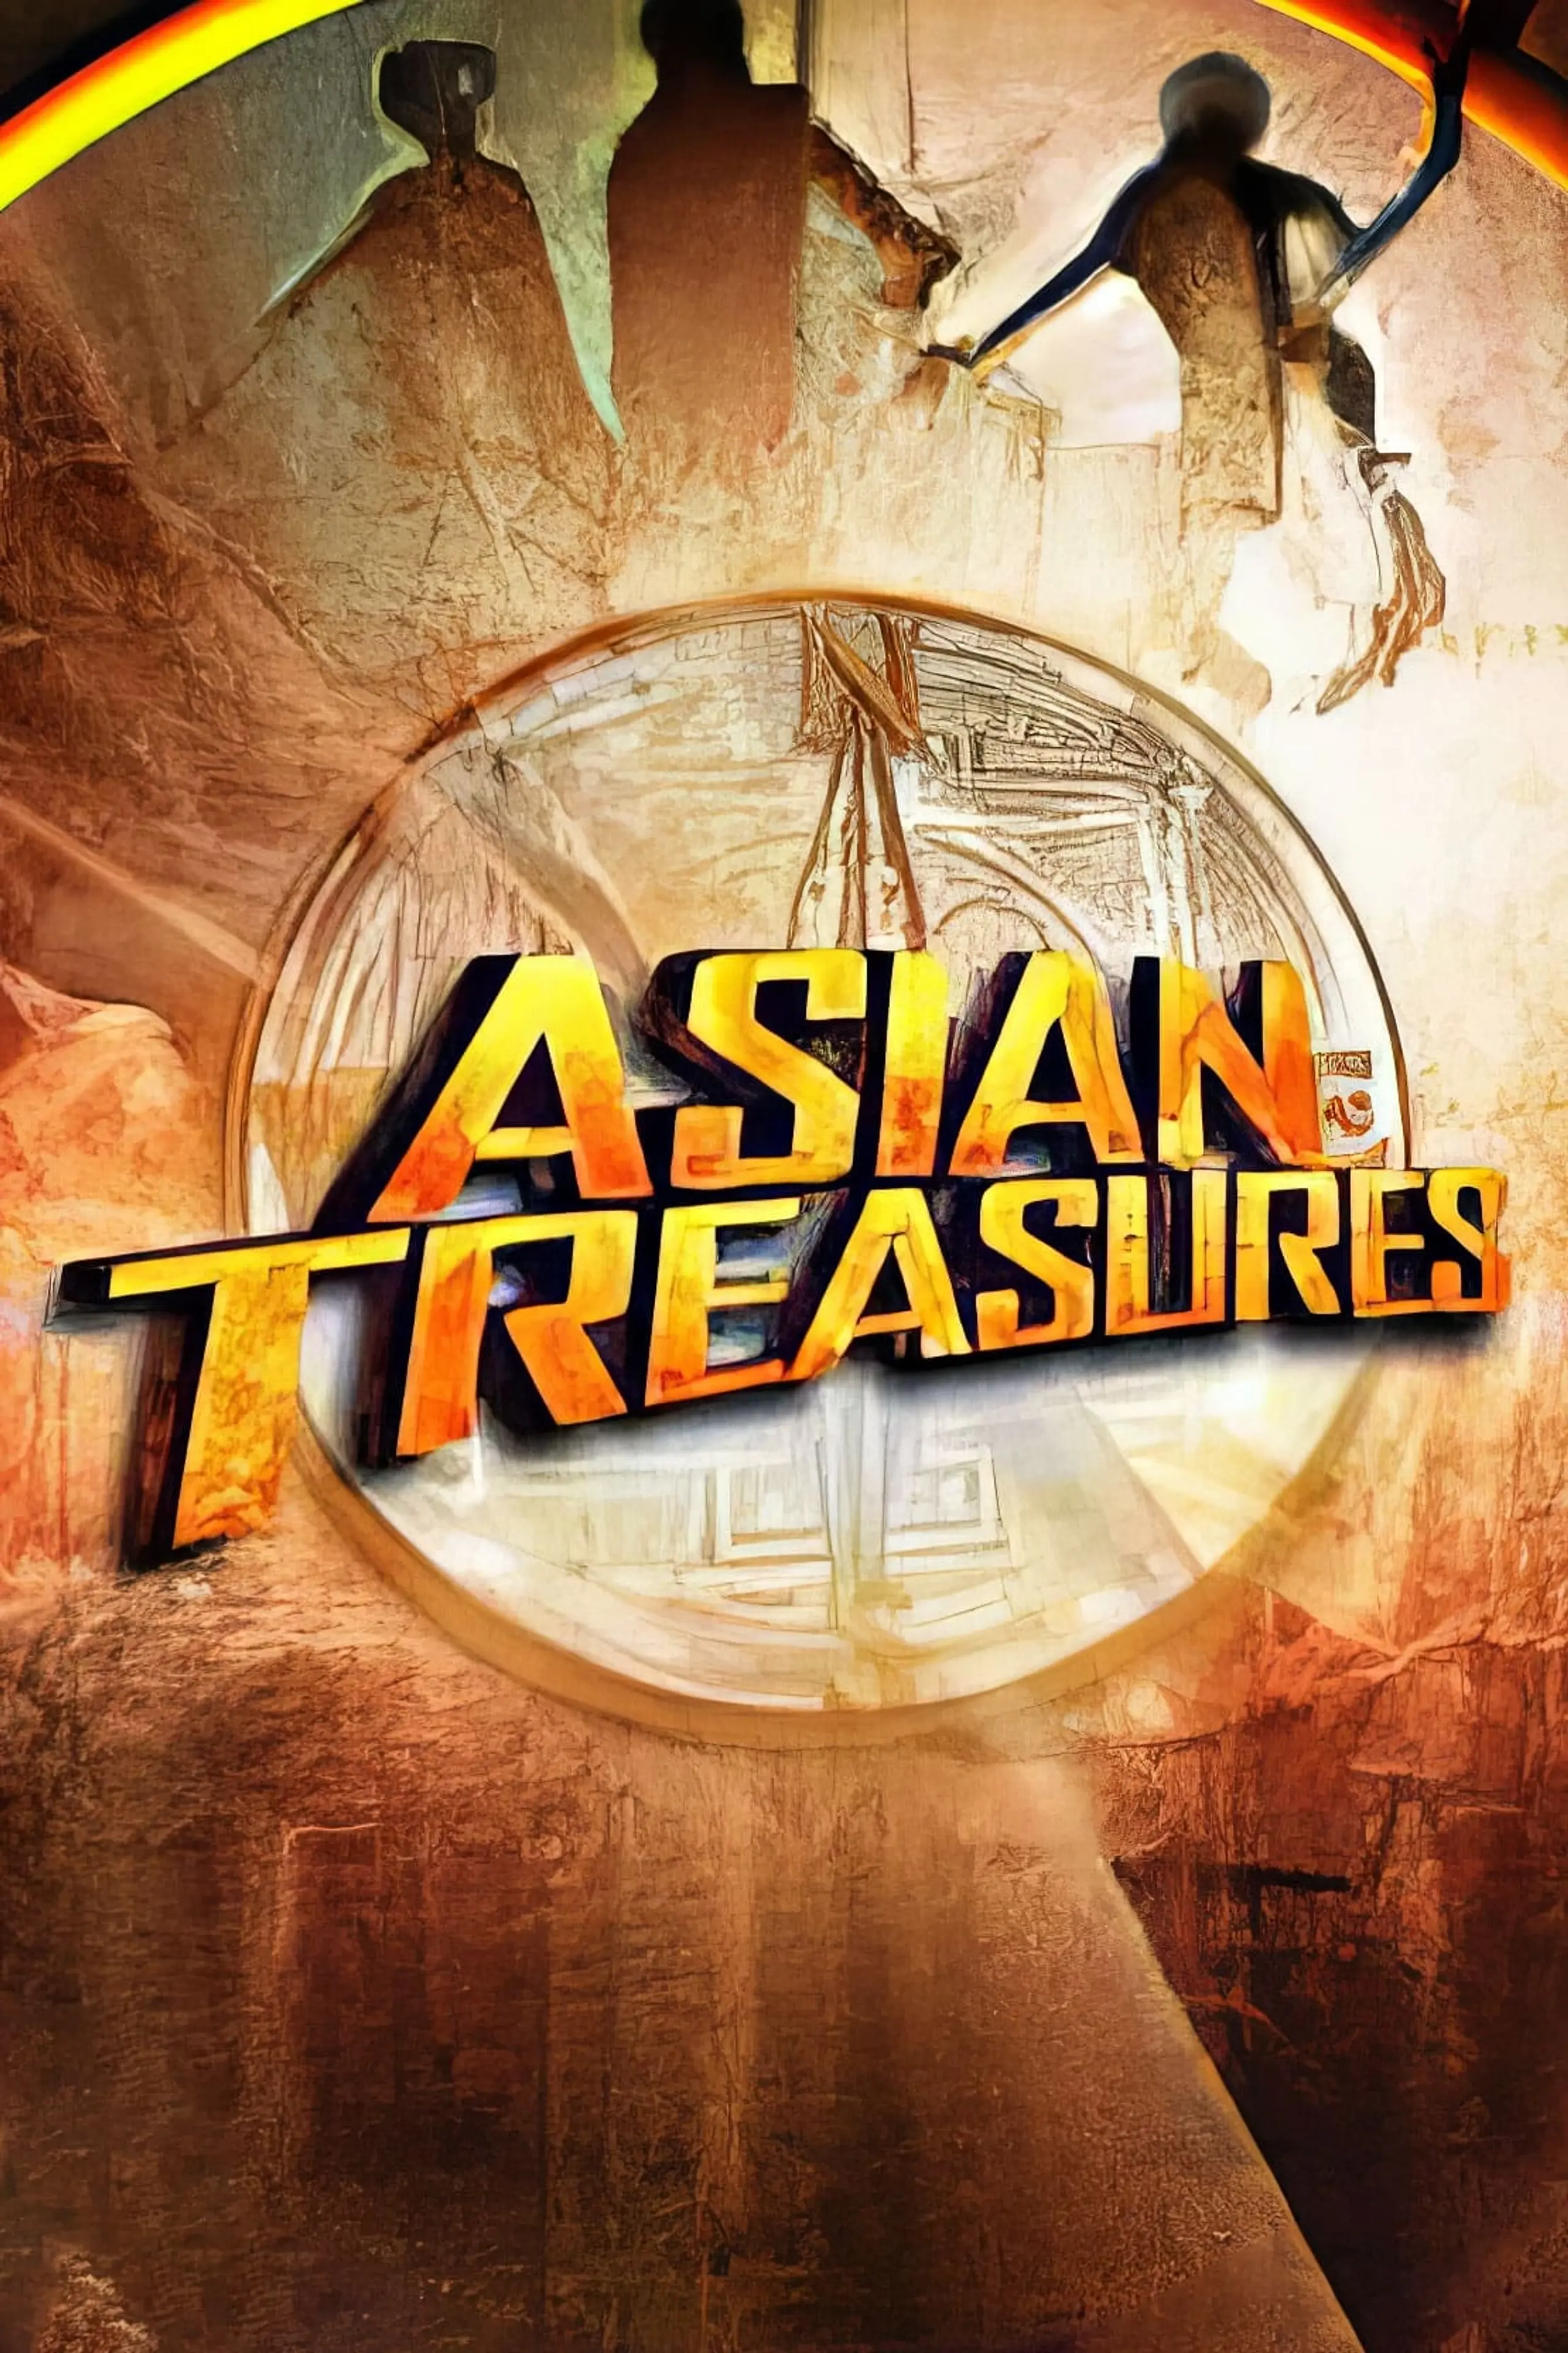 Asian Treasures